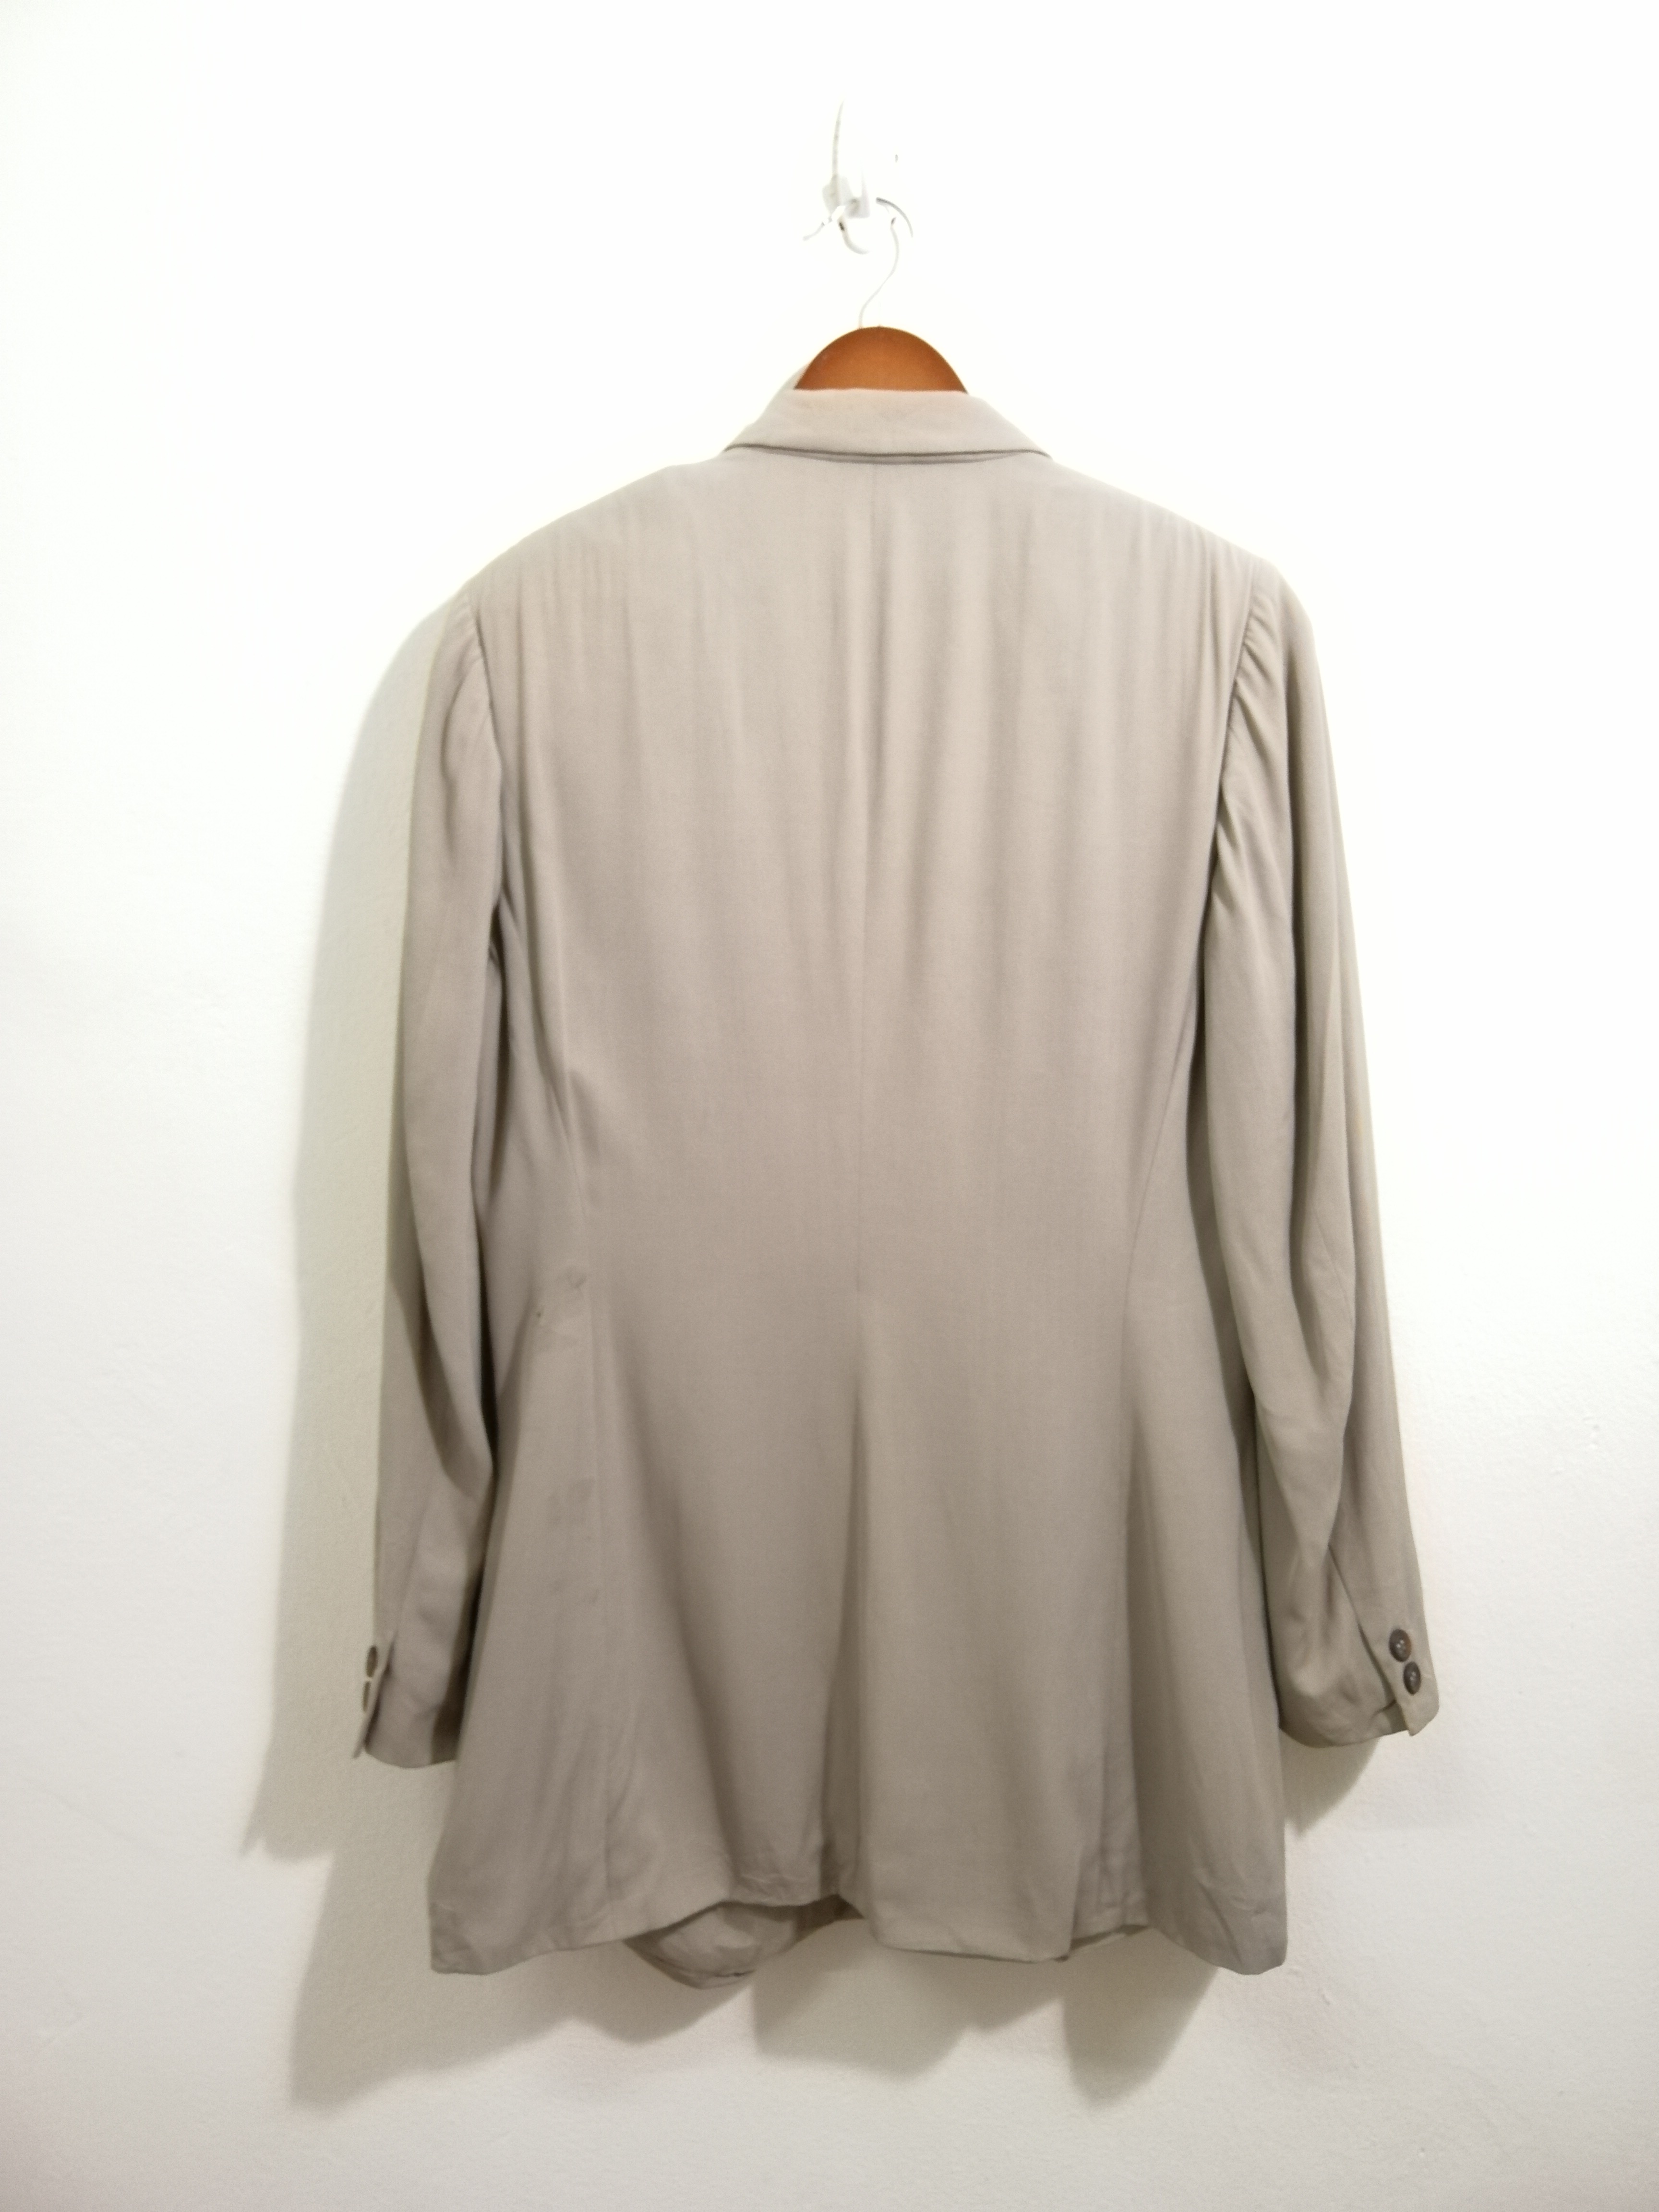 Jil Sander Jacket Coat Gray Color 10 - 2